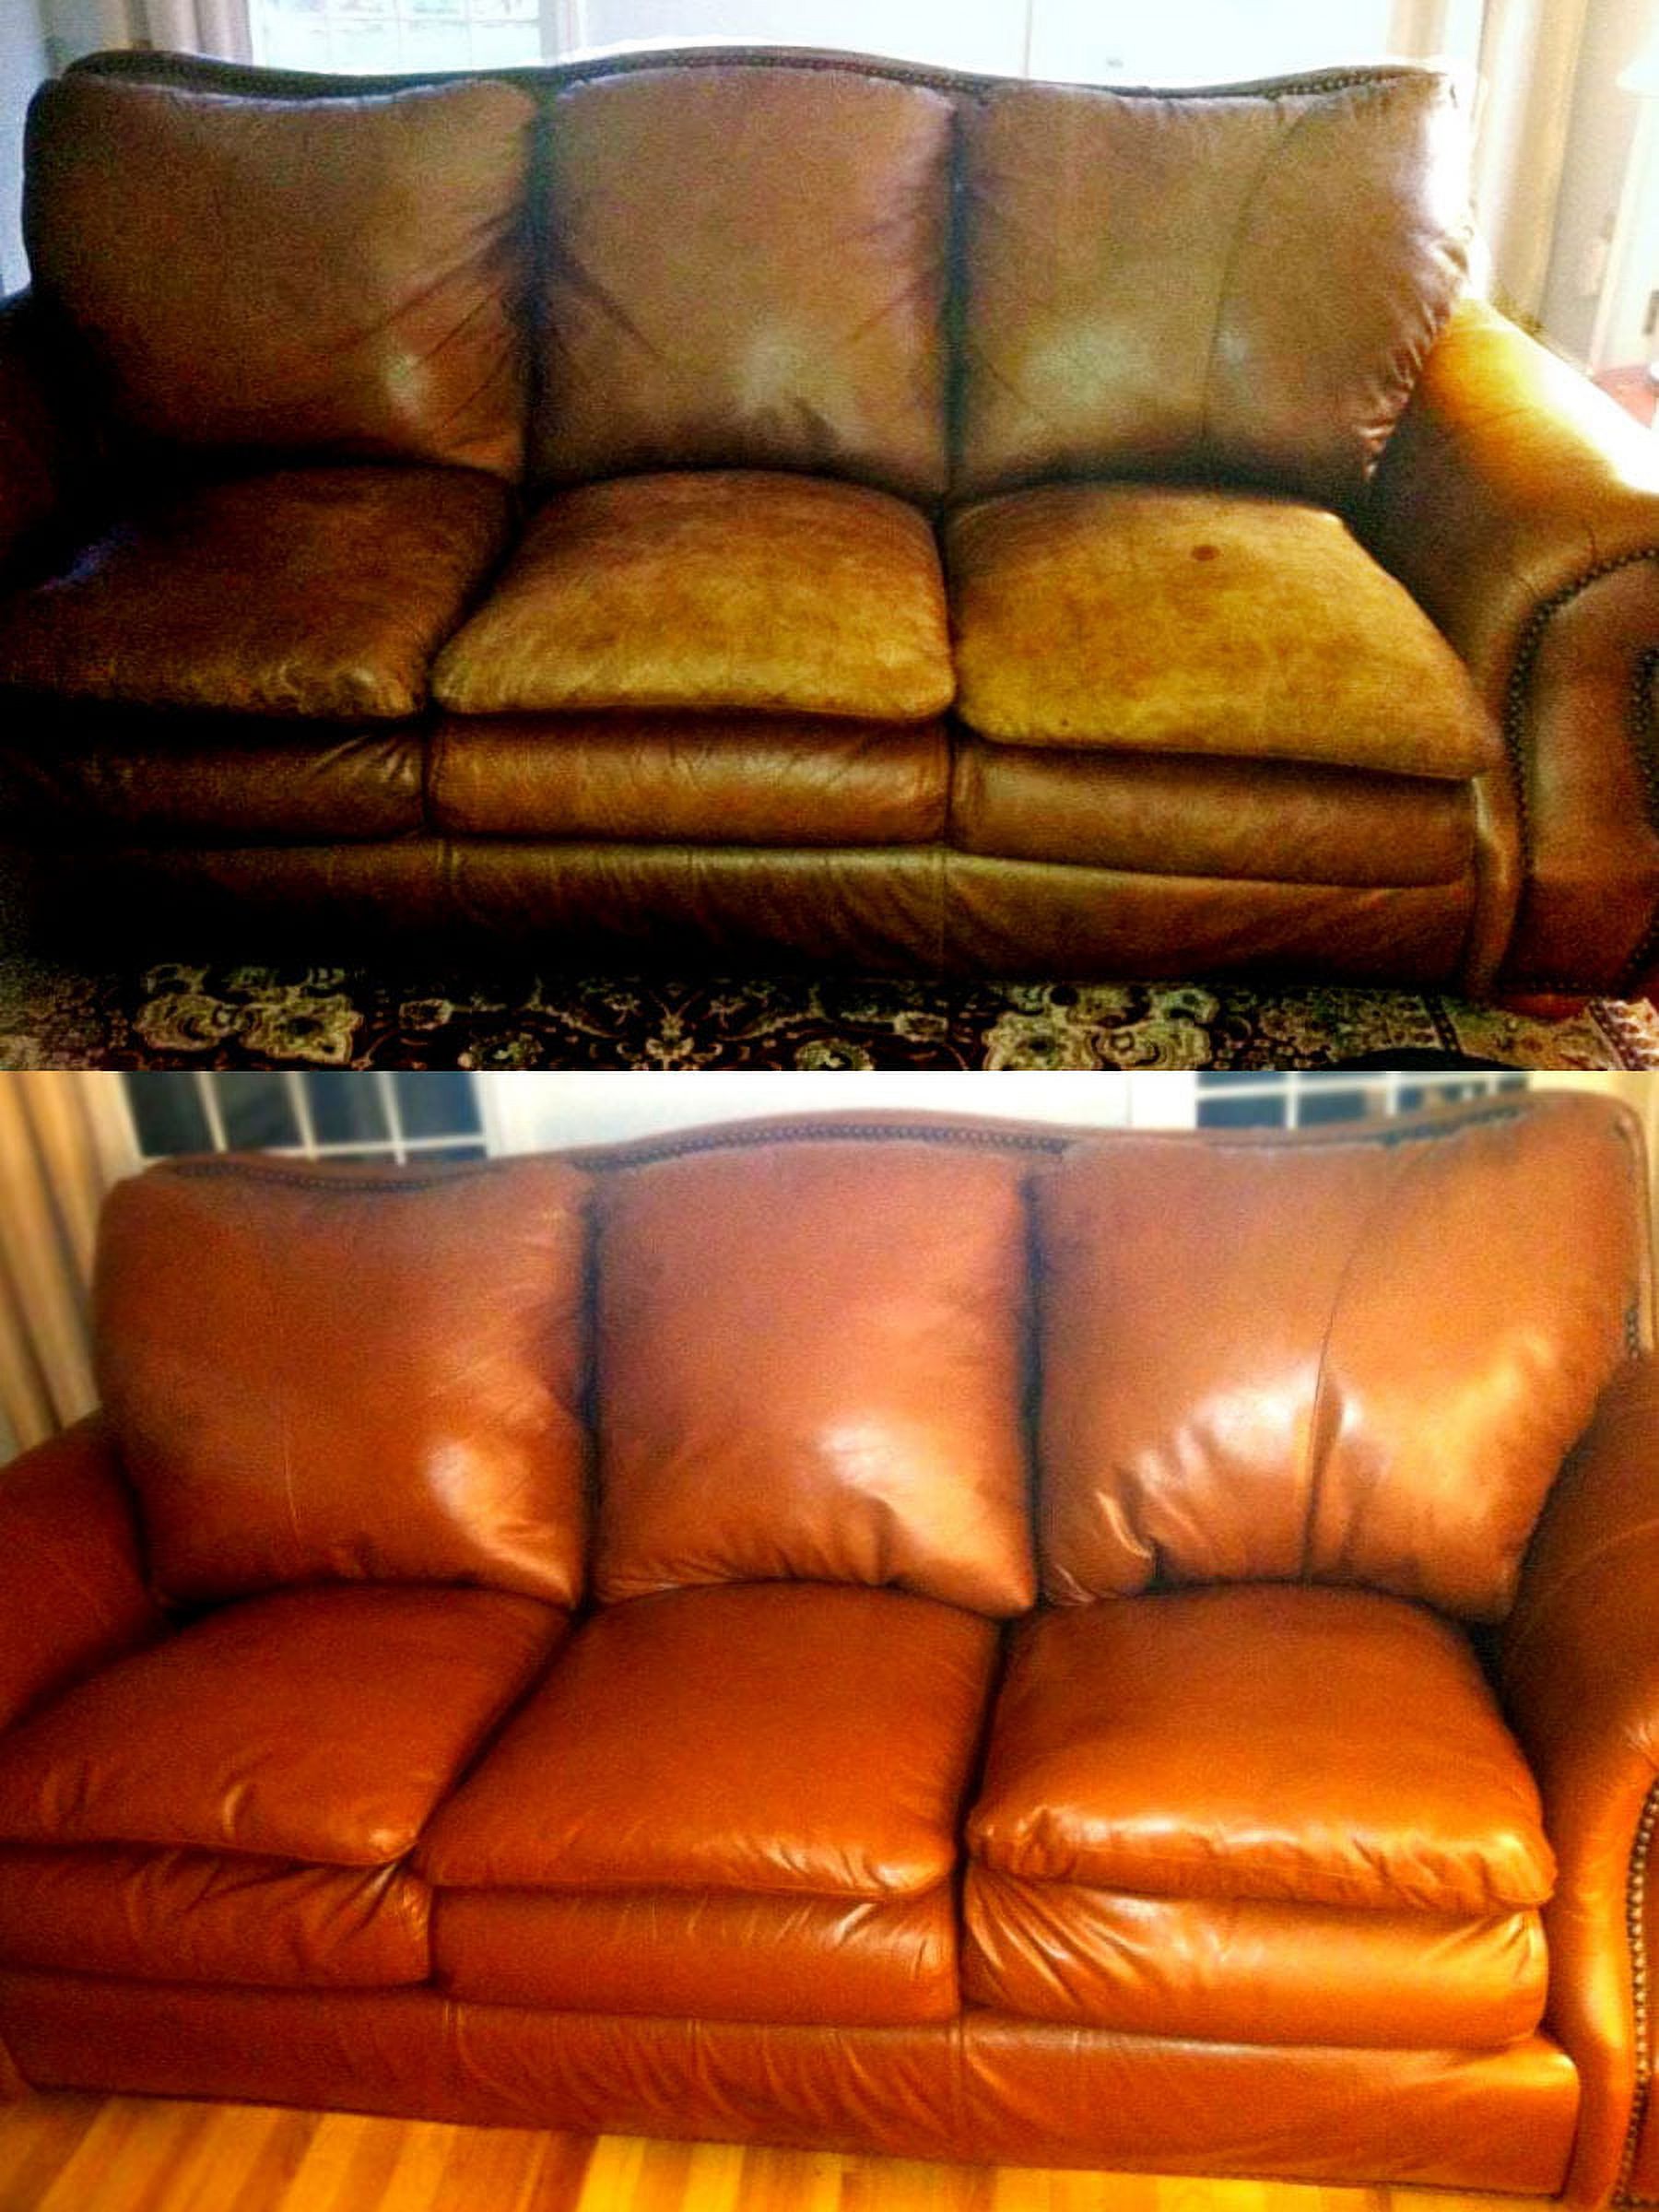 Furniture Blend It on Mega Kit / Leather Restorer / 8 oz Refinish 2 oz Conditioner / 4 oz Top Coat / Black and White 1 oz Color Changer / Sponge